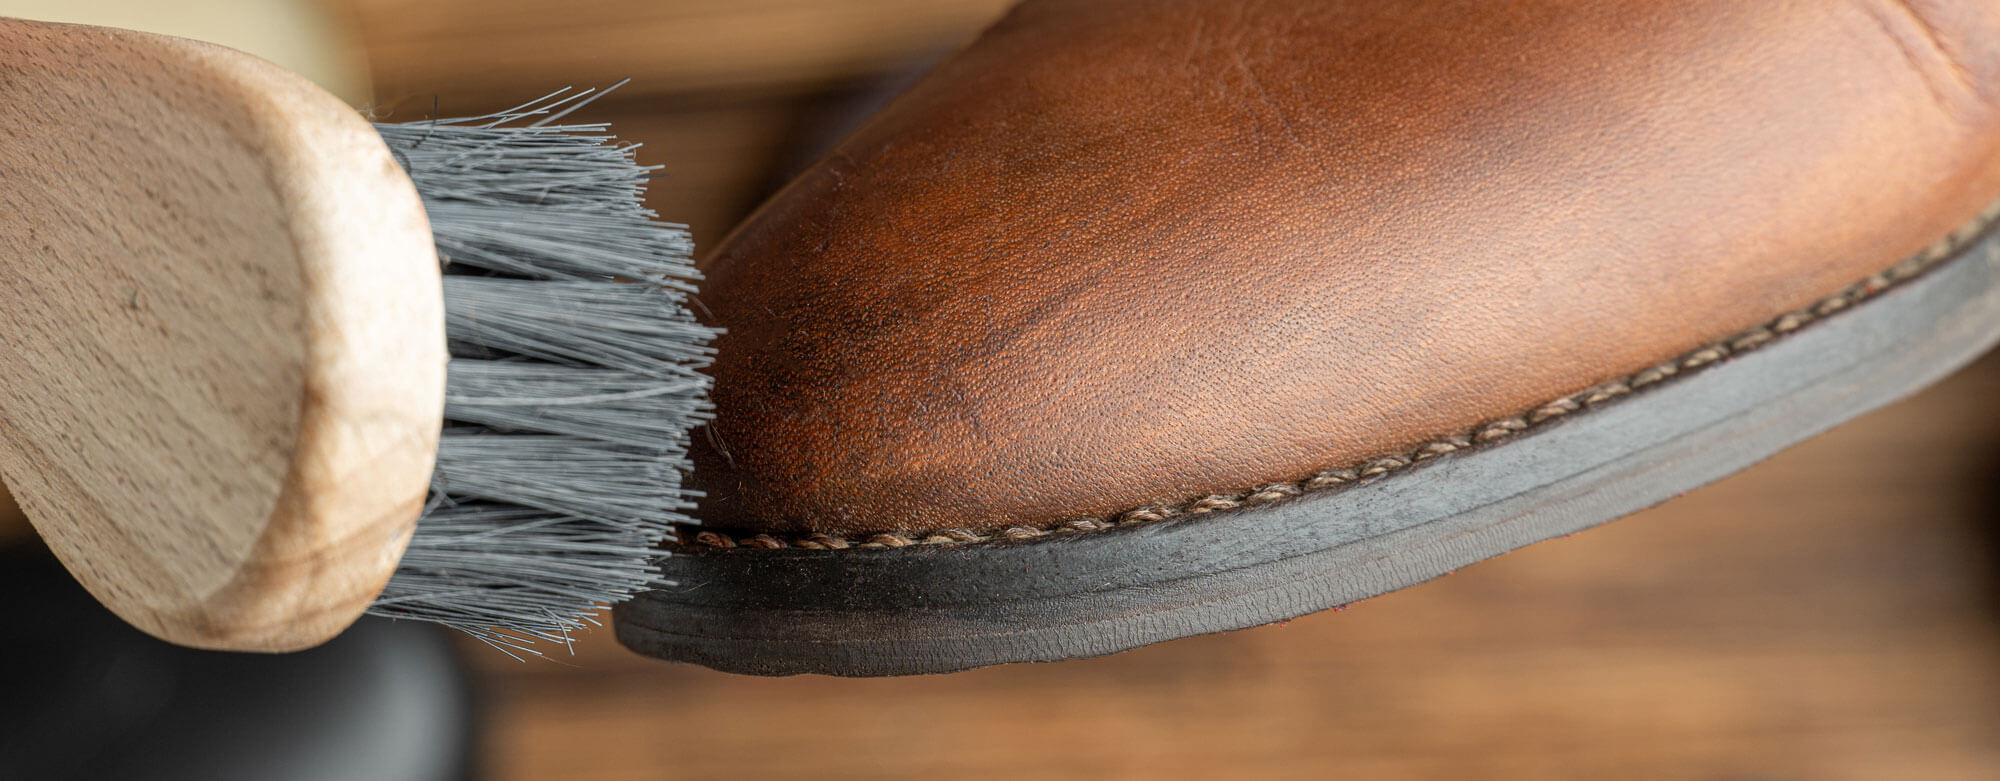 Les bottes, chaussures et sacs en cuir Martino sont fabriqués au Québec avec soin